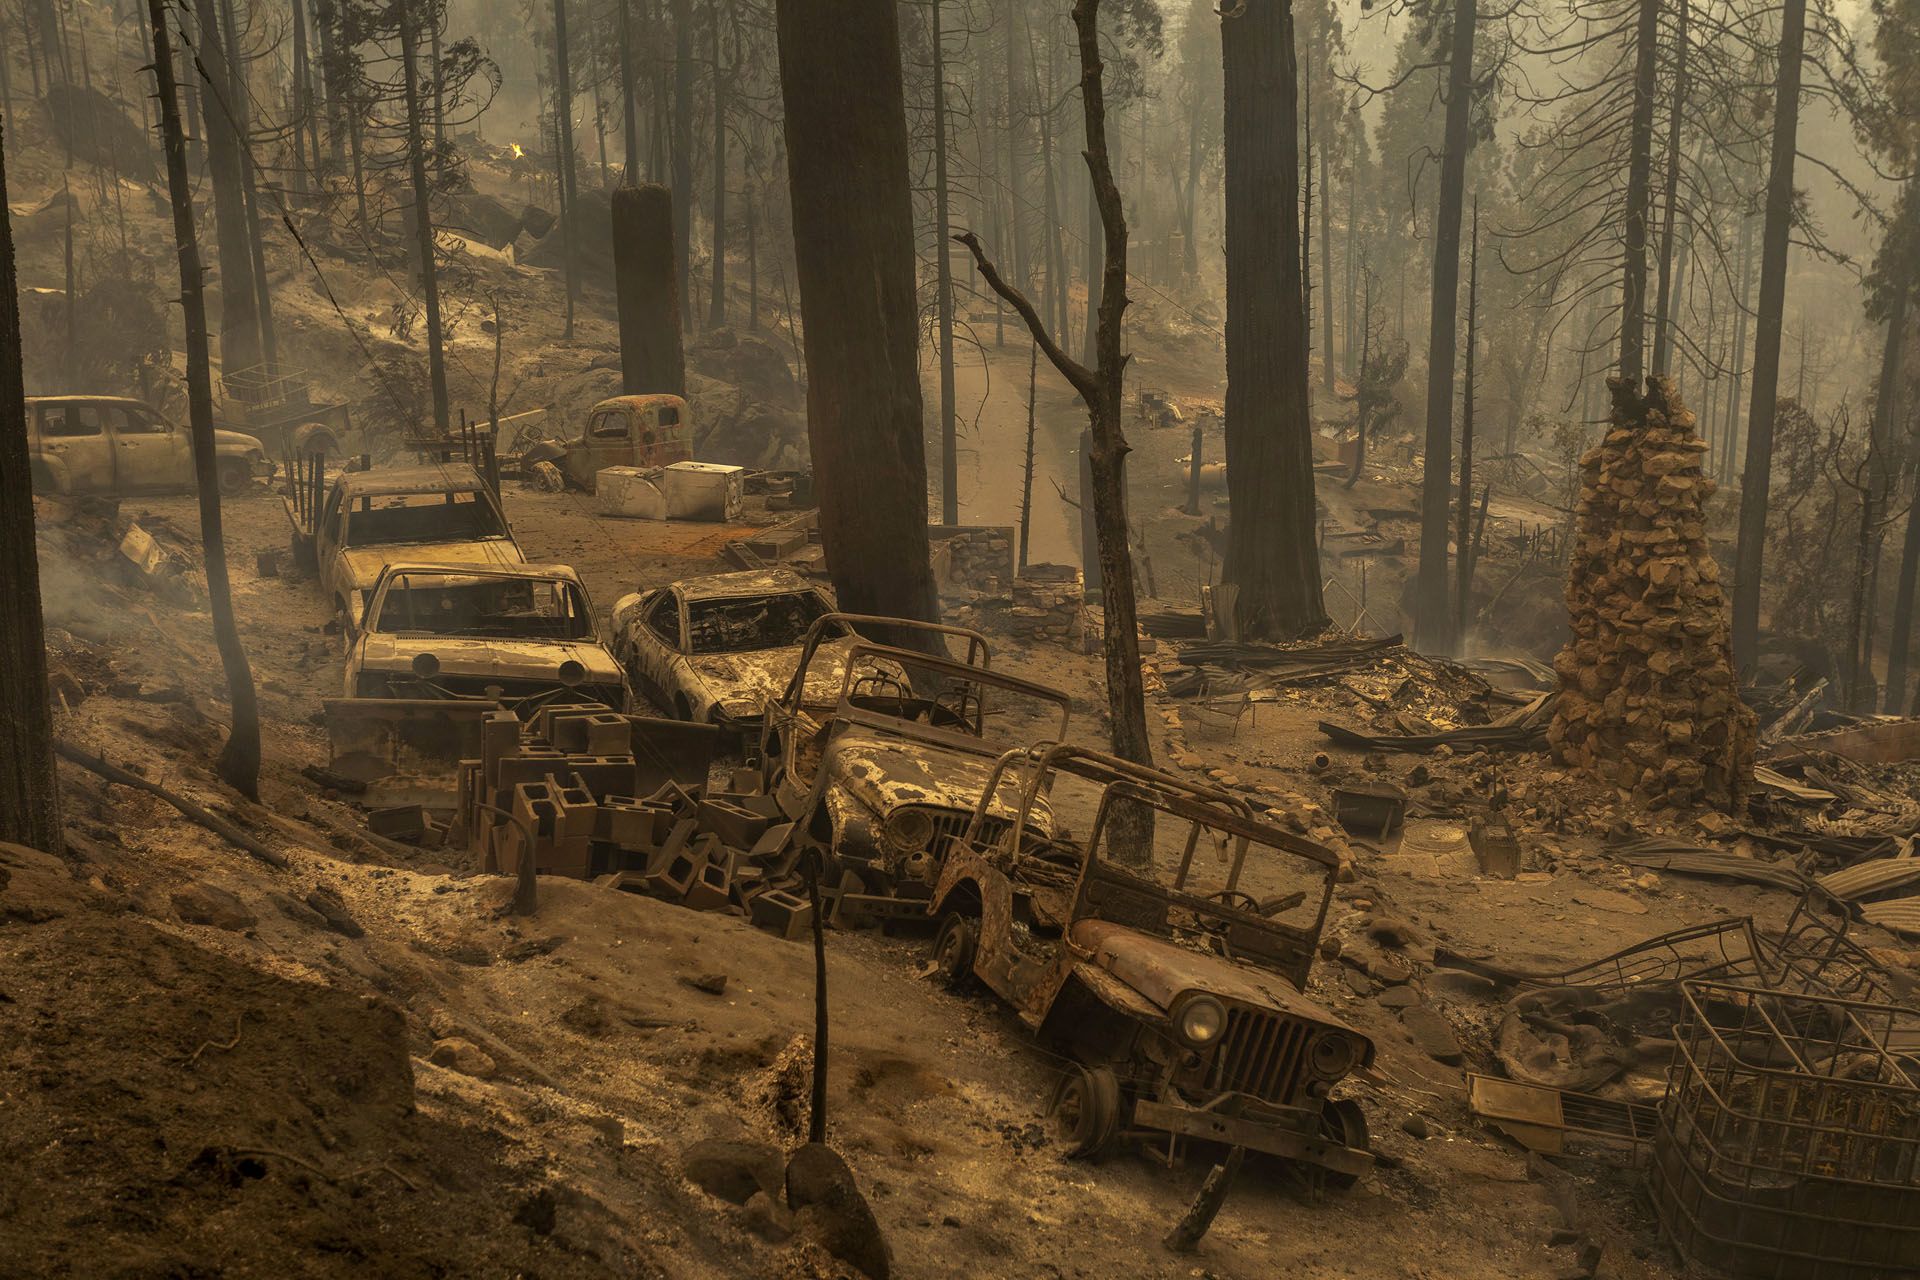 Kaliforniában története legnagyobb tűzvésze pusztít